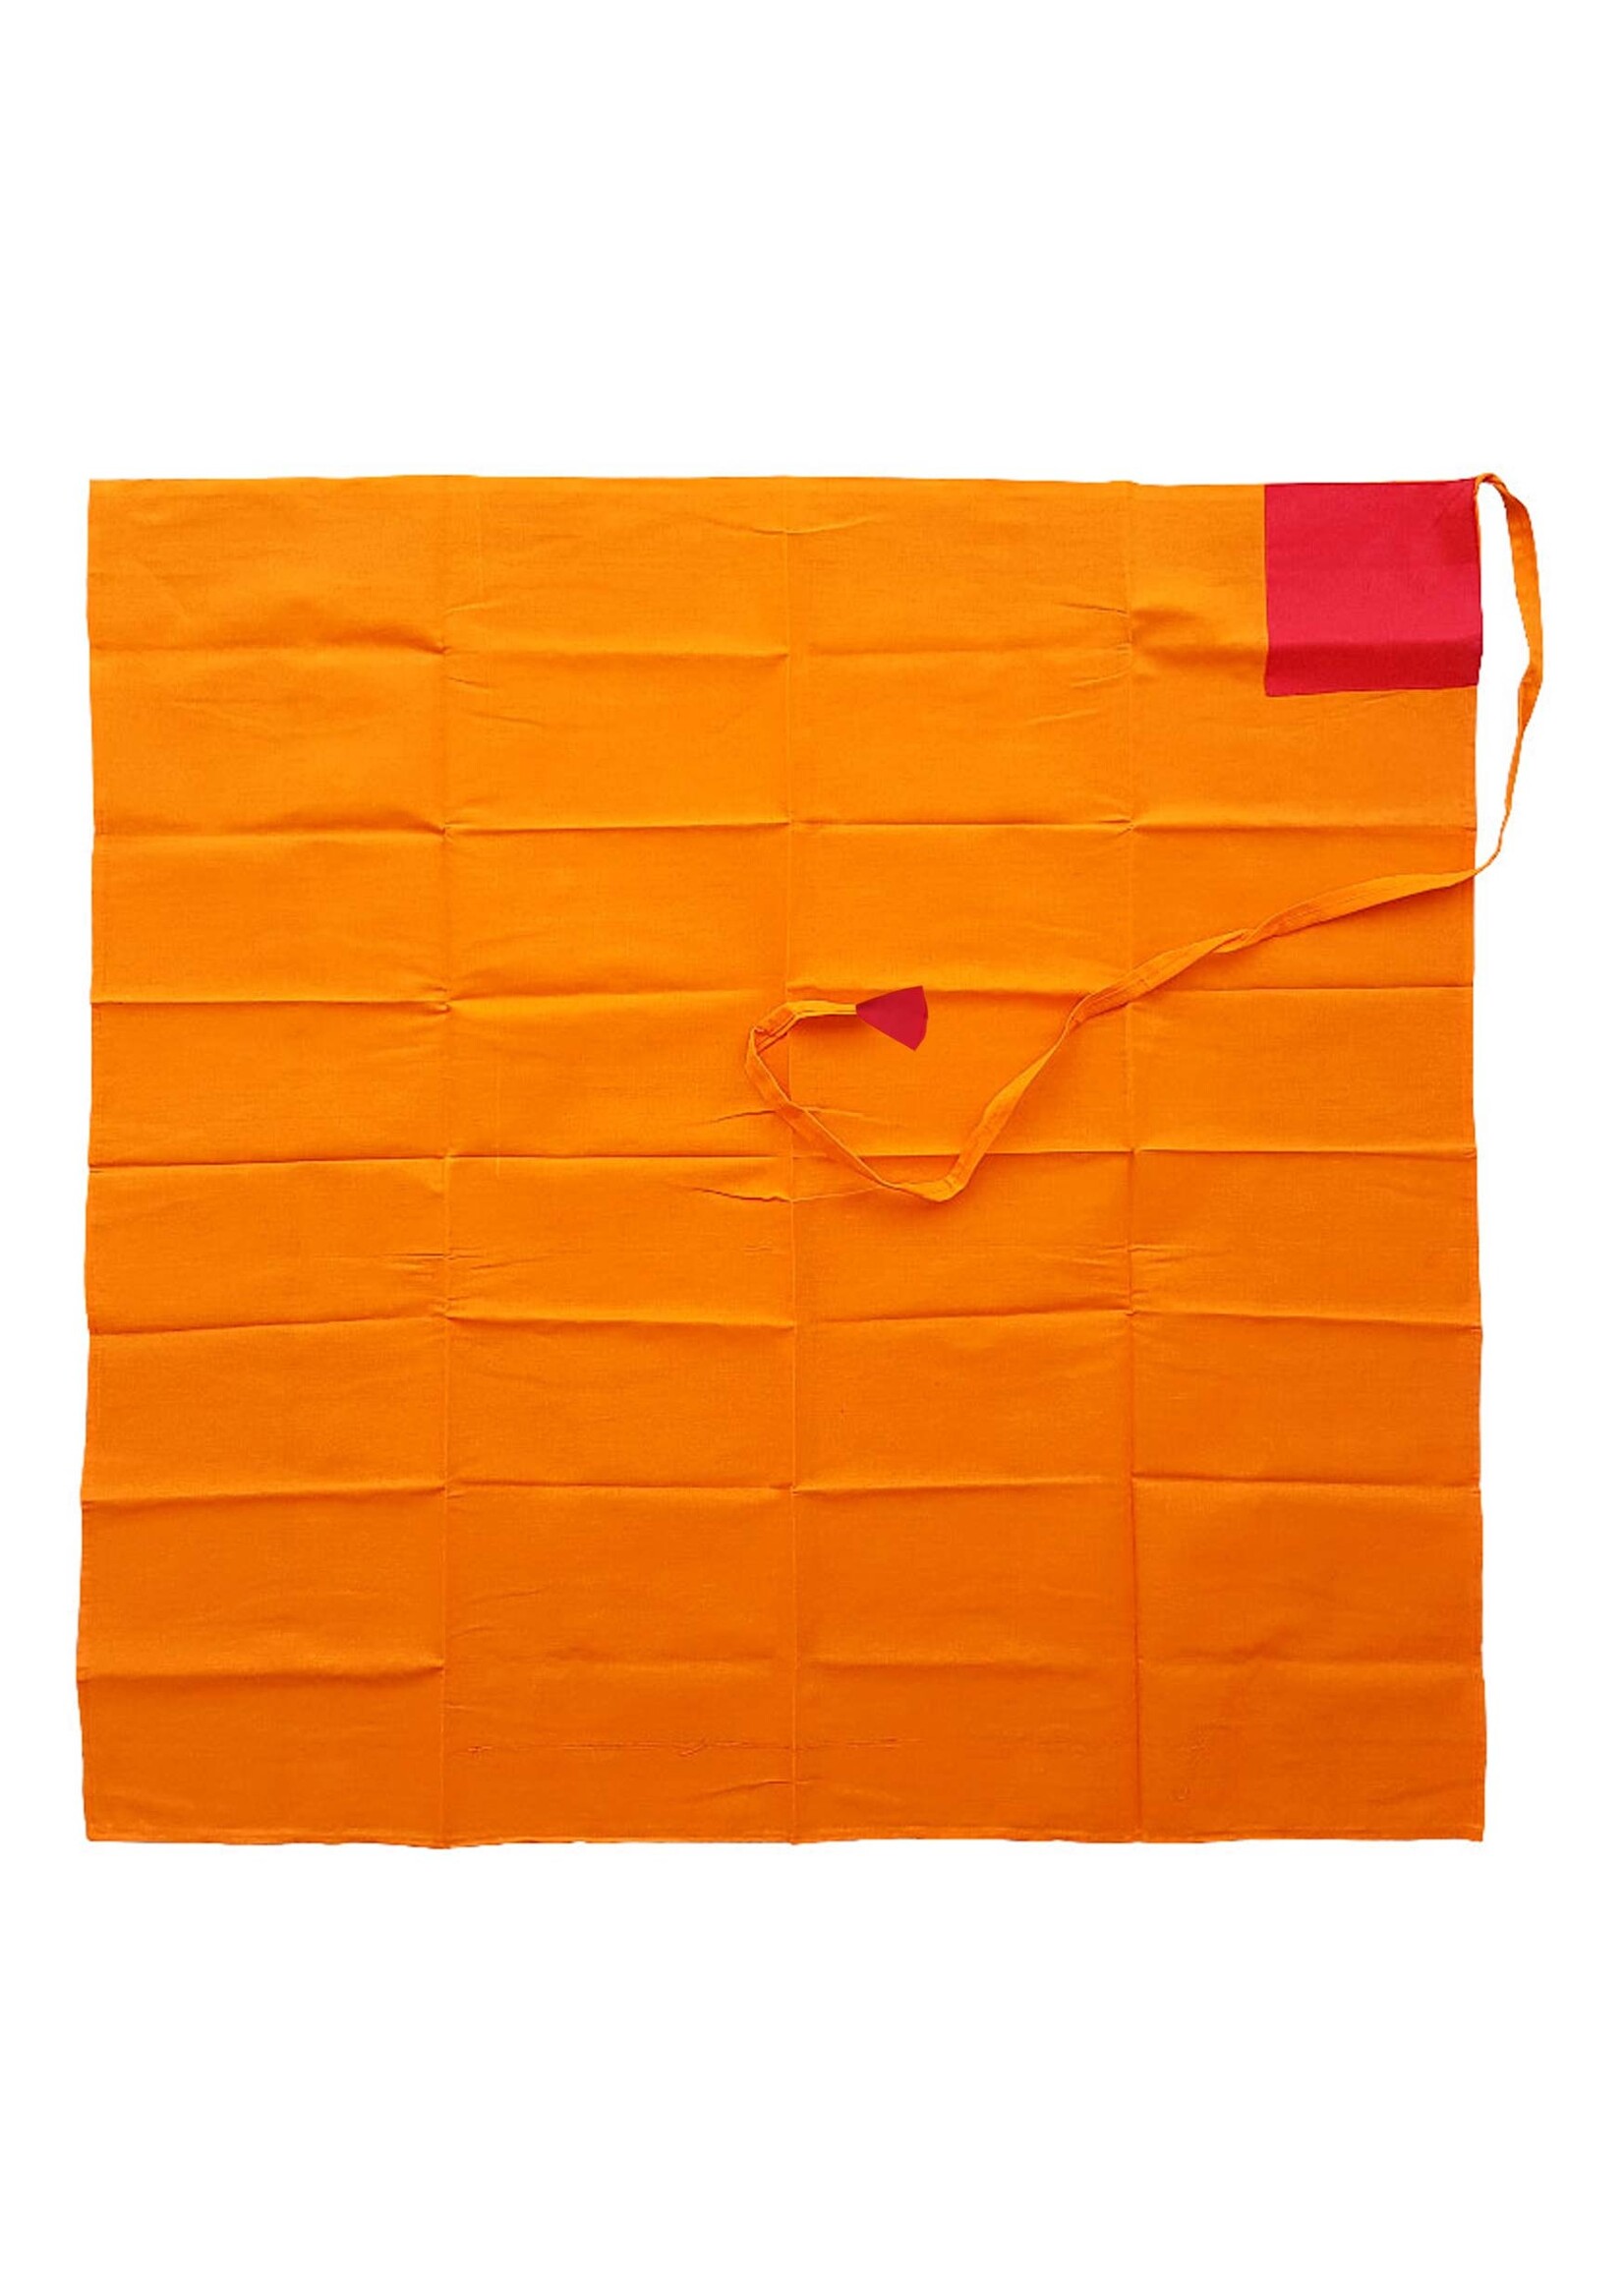 Couverture de livre en coton de soie tibétaine